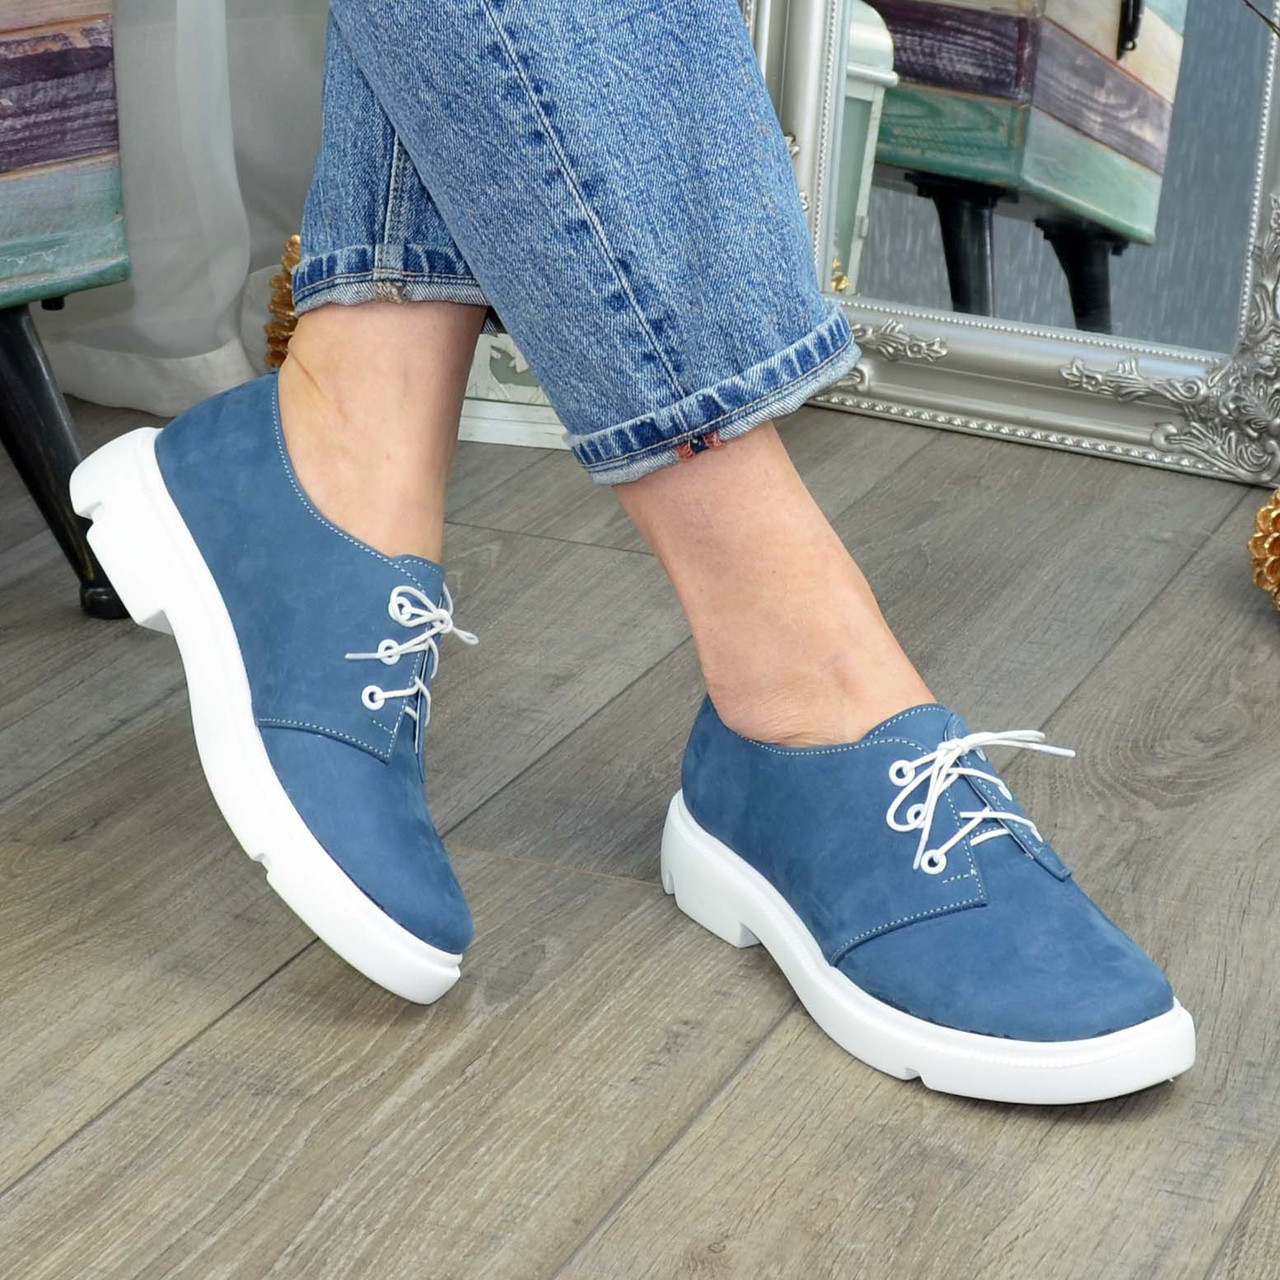 Туфли женские голубые на шнуровке, низкий ход. Натуральная кожа нубук